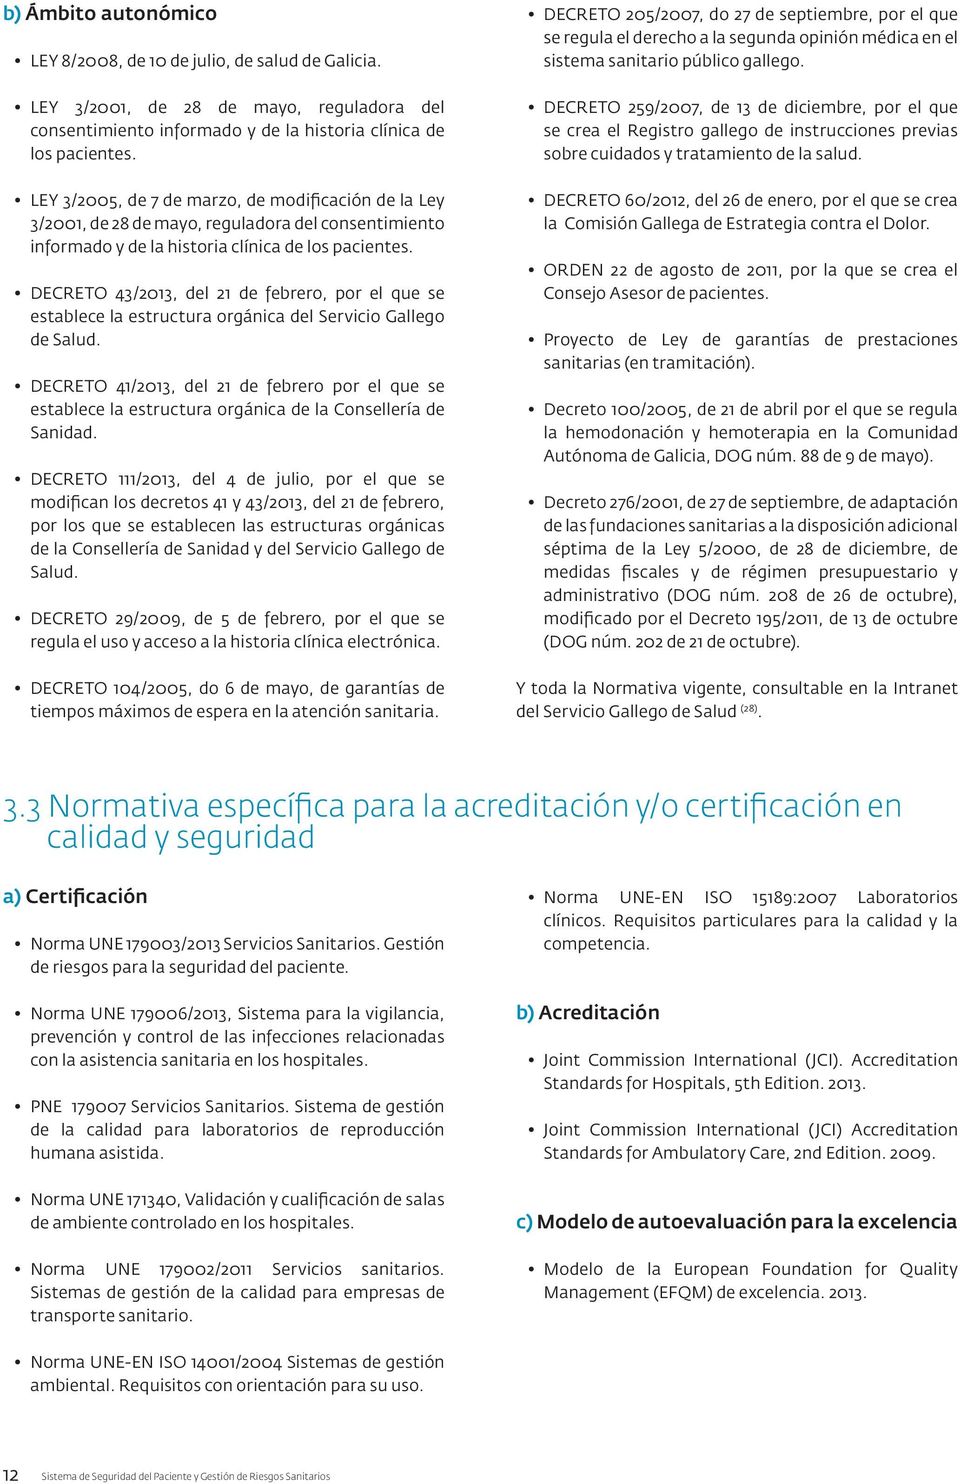 DECRETO 43/2013, del 21 de febrero, por el que se establece la estructura orgánica del Servicio Gallego de Salud.